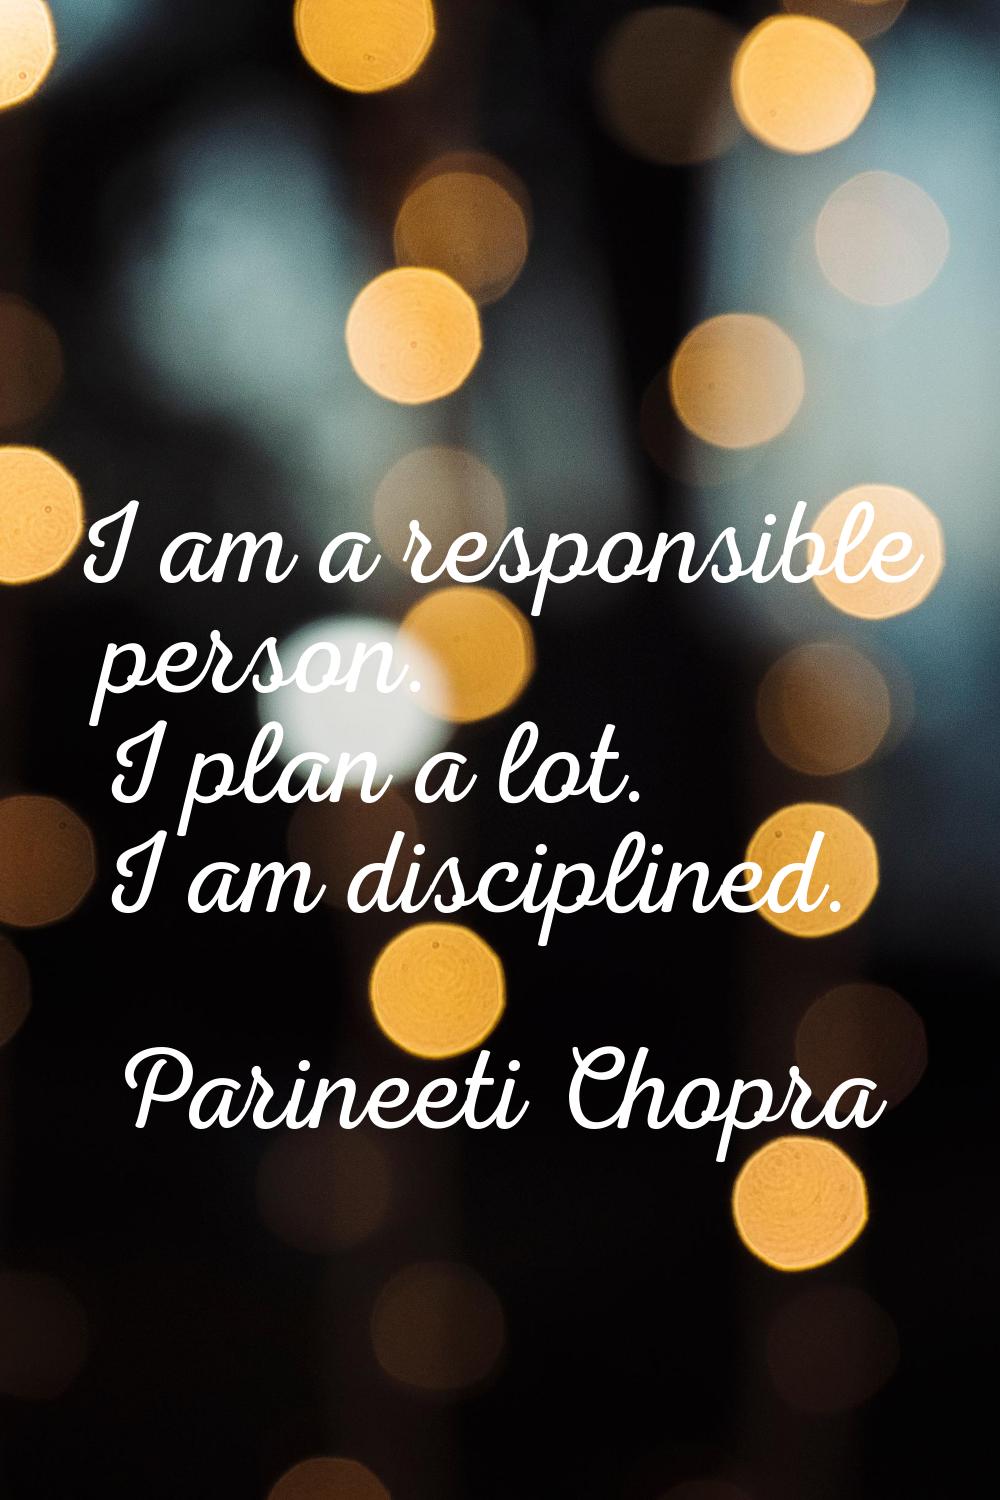 I am a responsible person. I plan a lot. I am disciplined.